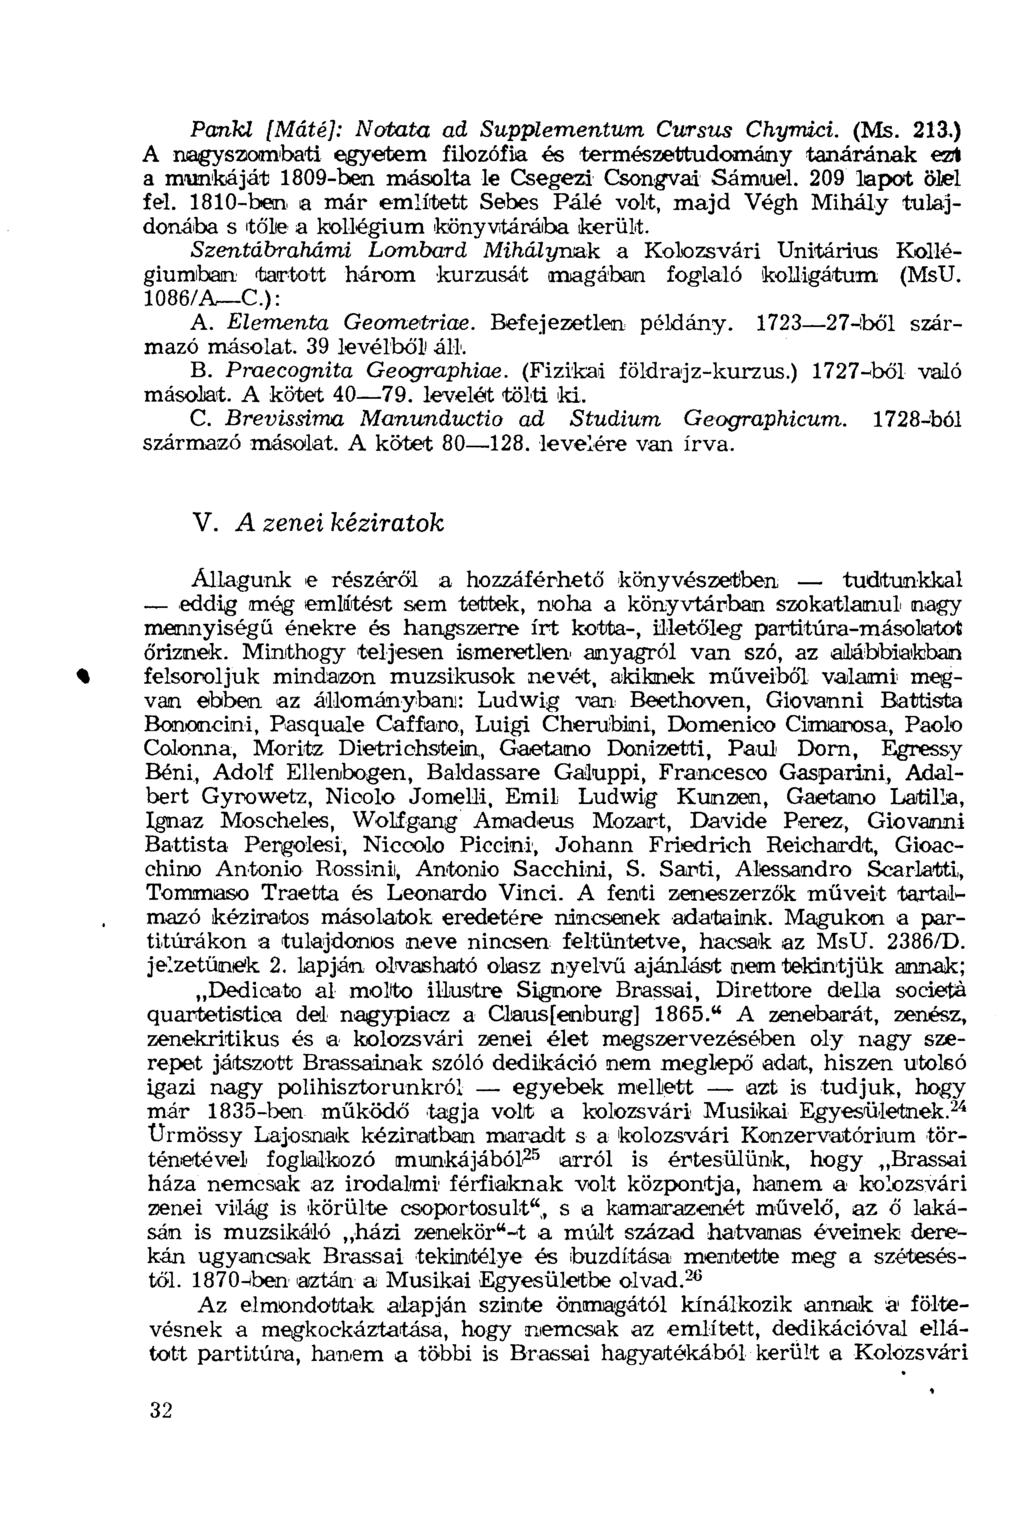 Pankl [Máté]: Notata ad Supplementum Cursus Chymici. (Ms. 213.) A nagyszombati egyetem filozófia és természettudomány tanárának ezu a munkáját 1809-ben másolta le Csegezi Csongvai Sámuel.